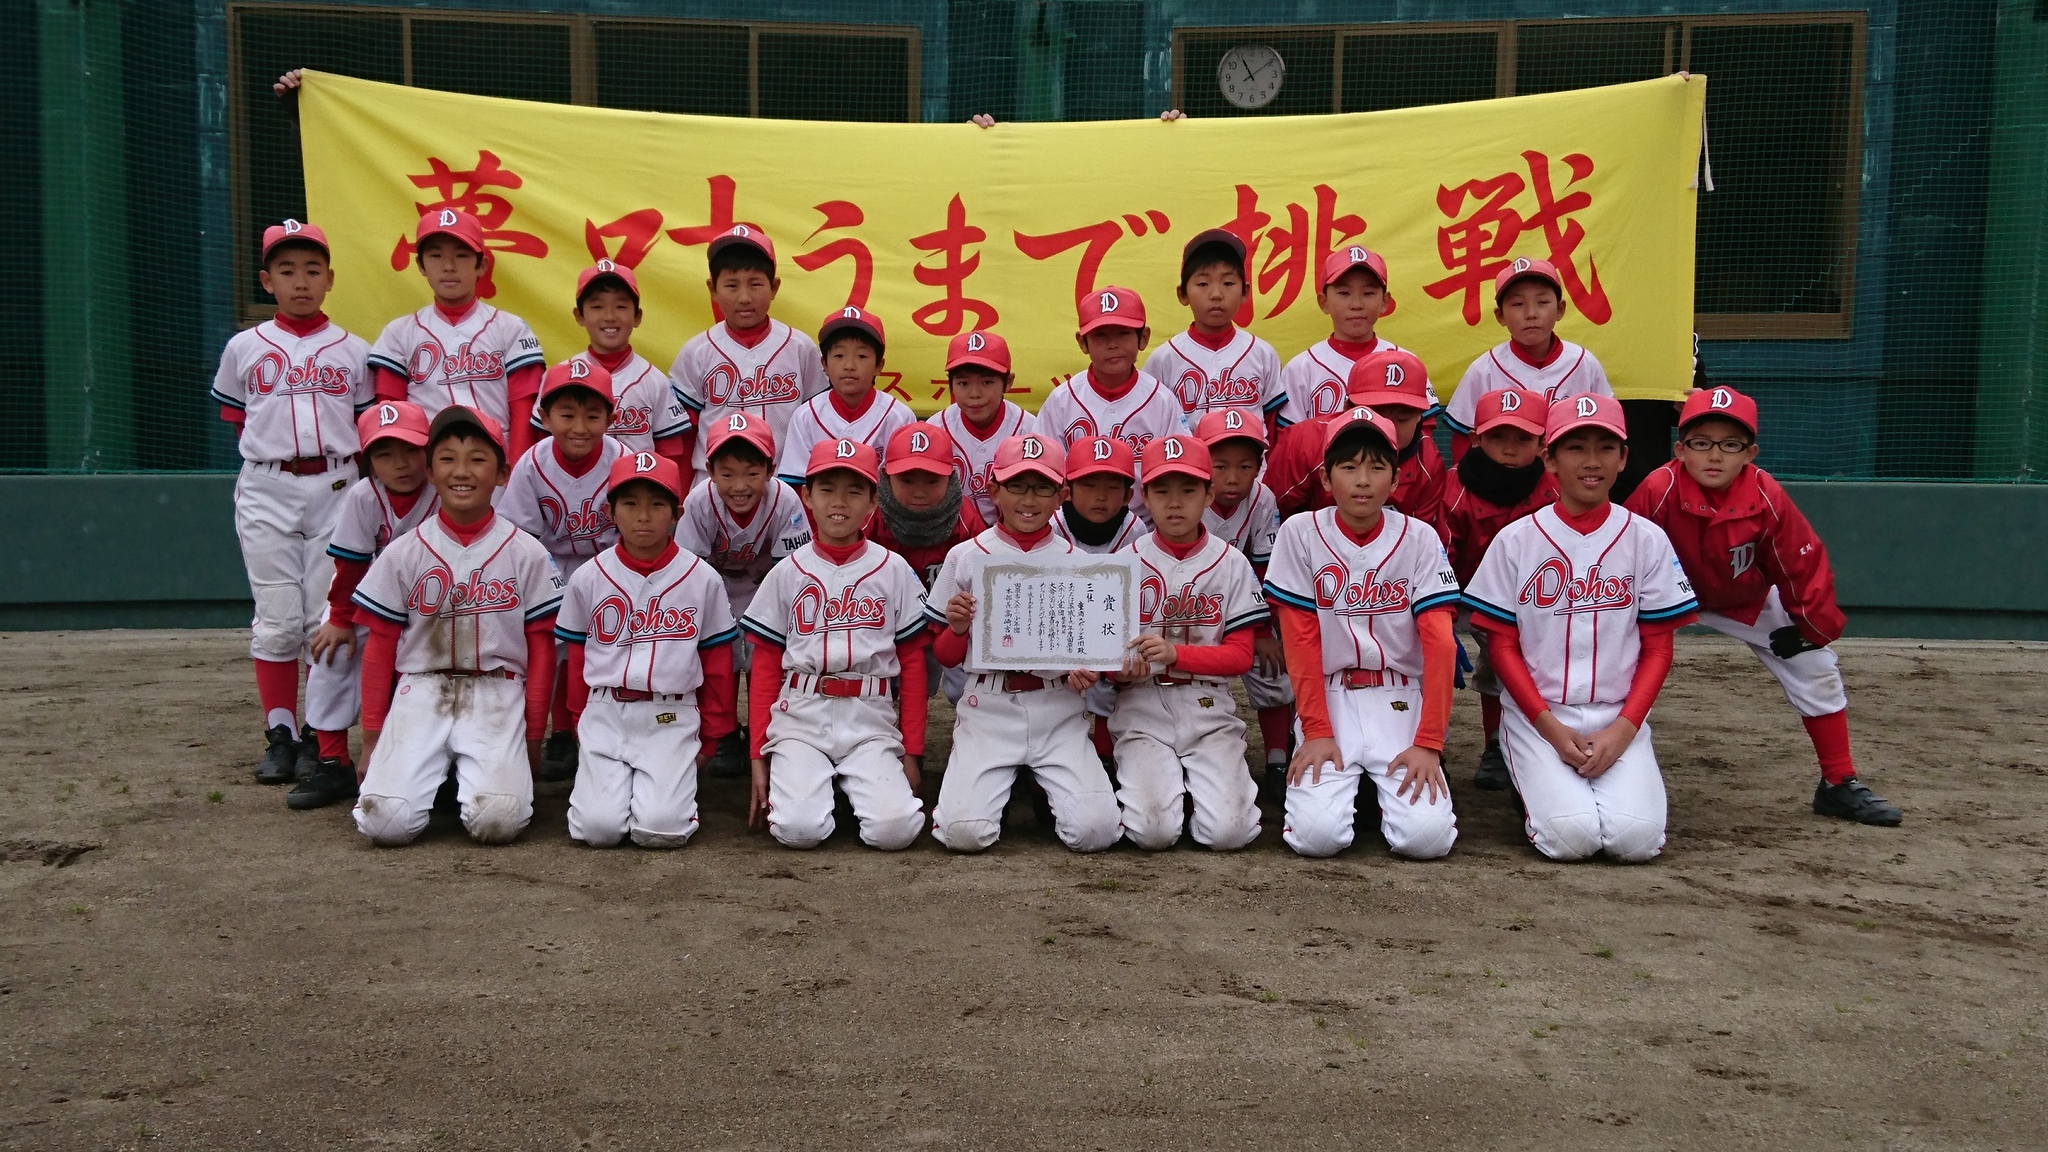 ライアン小川杯学童軟式野球大会  3位決定戦の結果